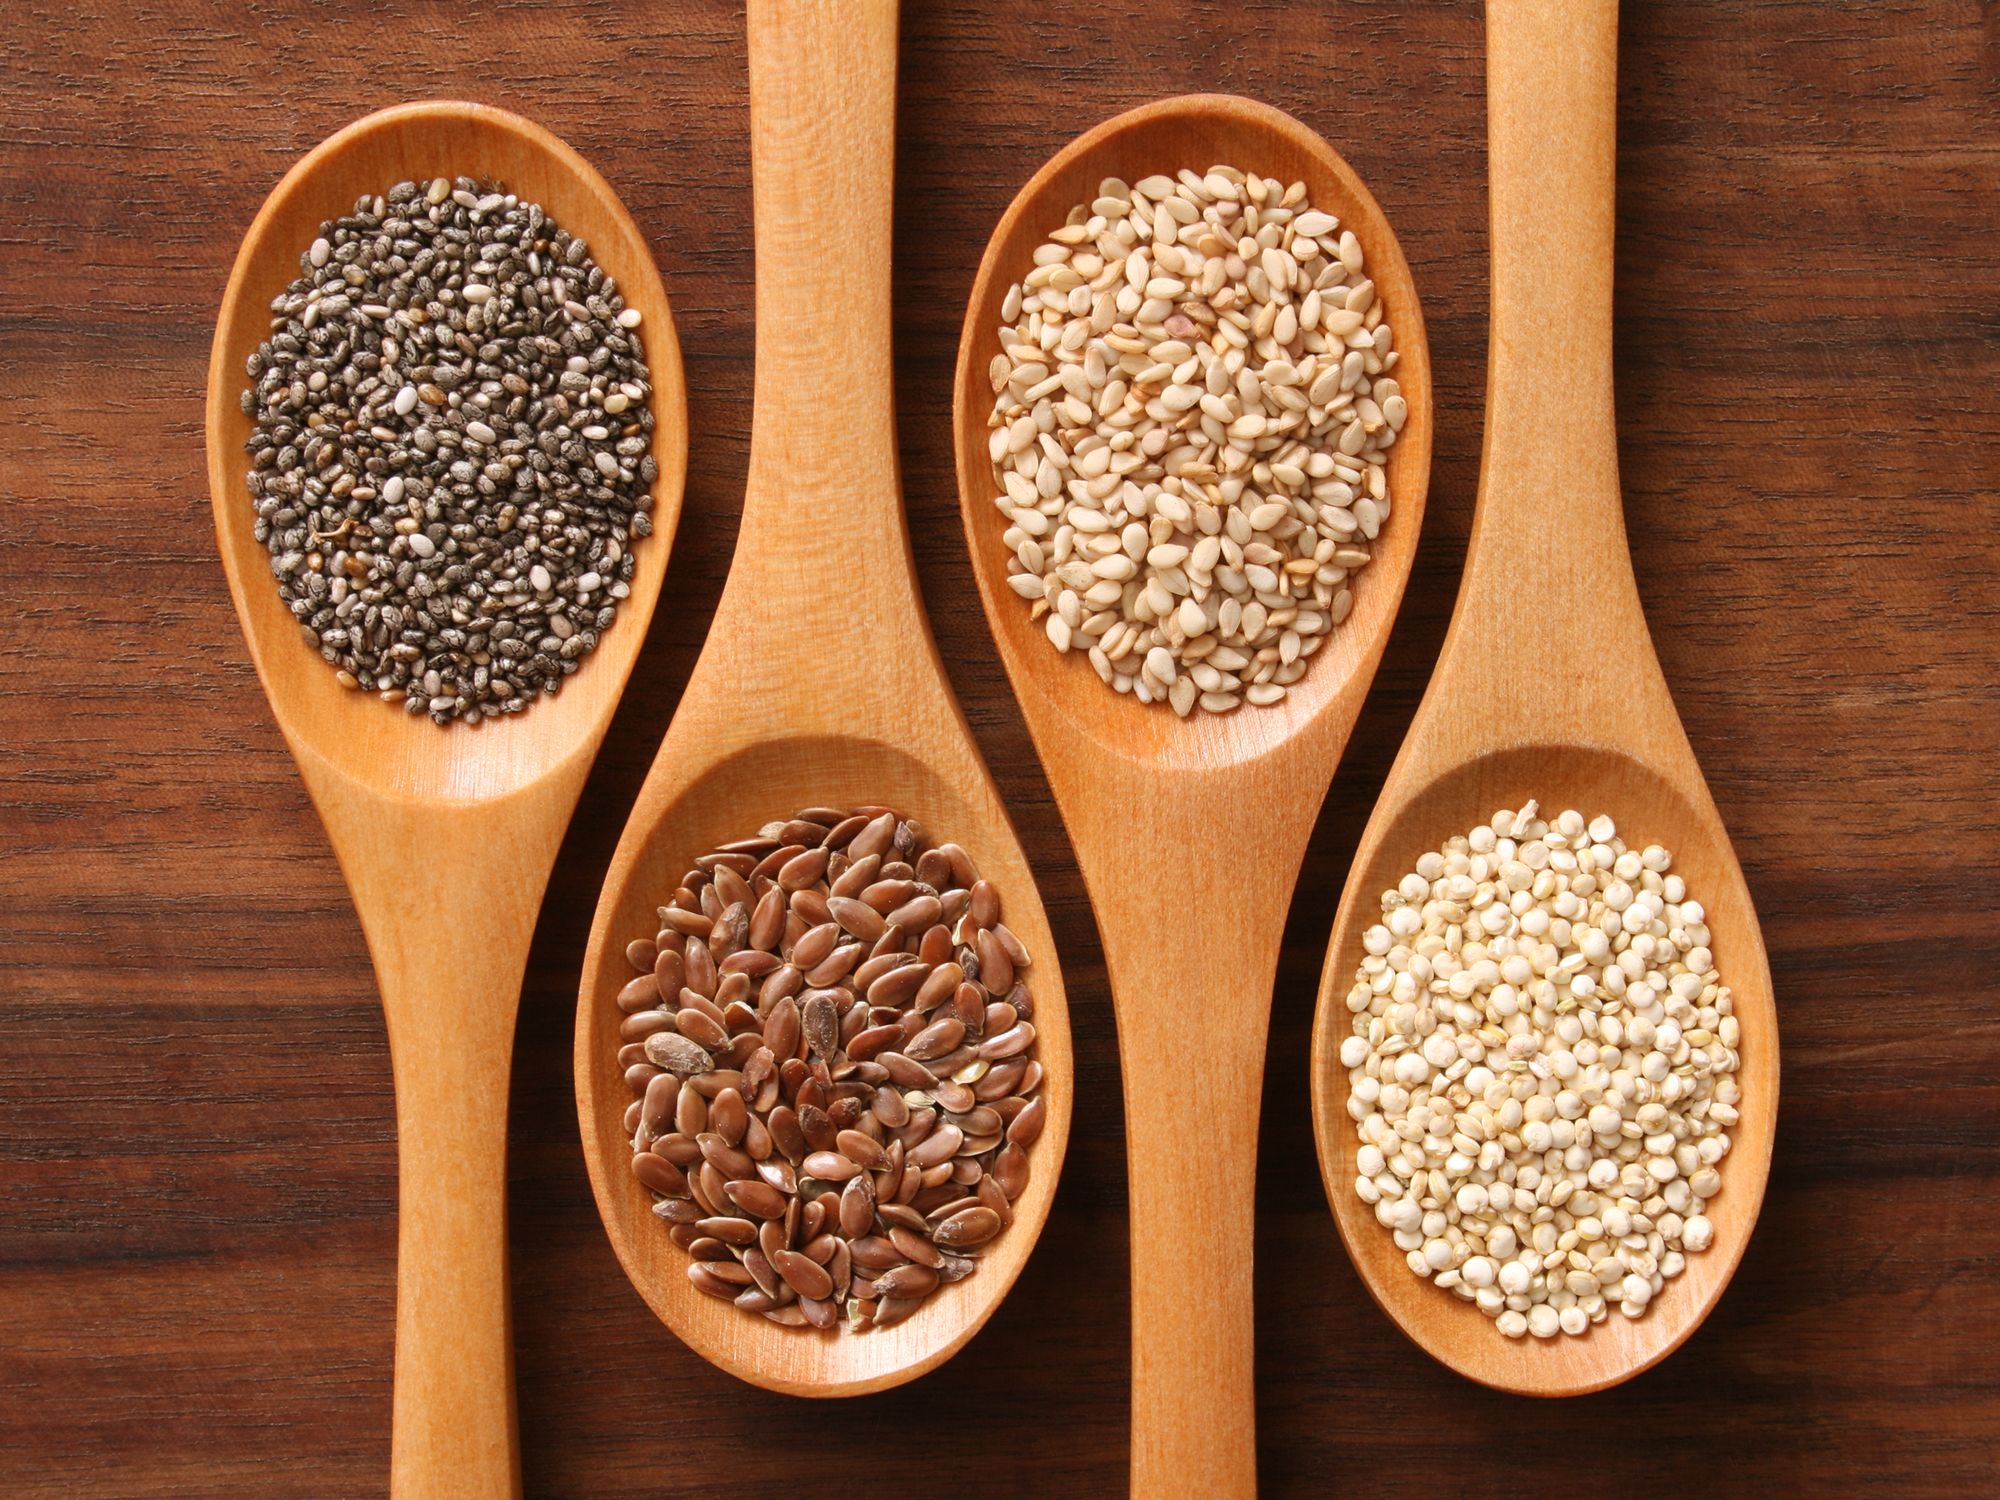 Les bienfaits nutritionnels des graines dans l'alimentation